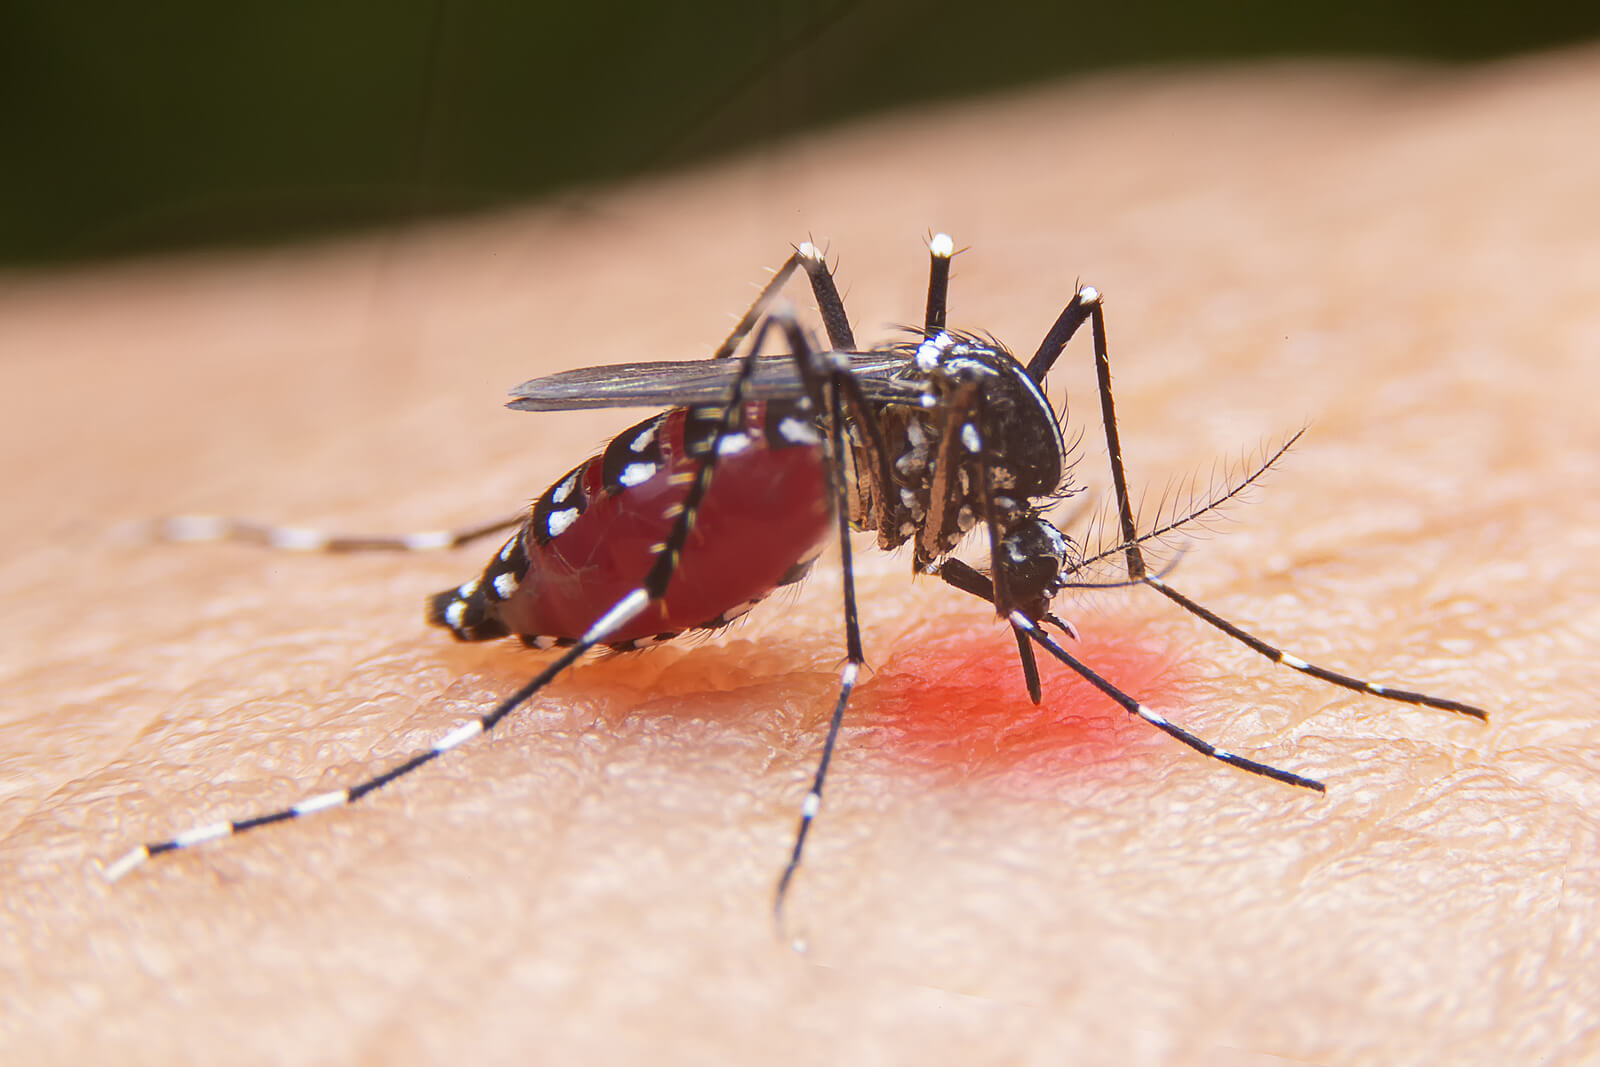 Perché le zanzare pungono: per nutrirsi